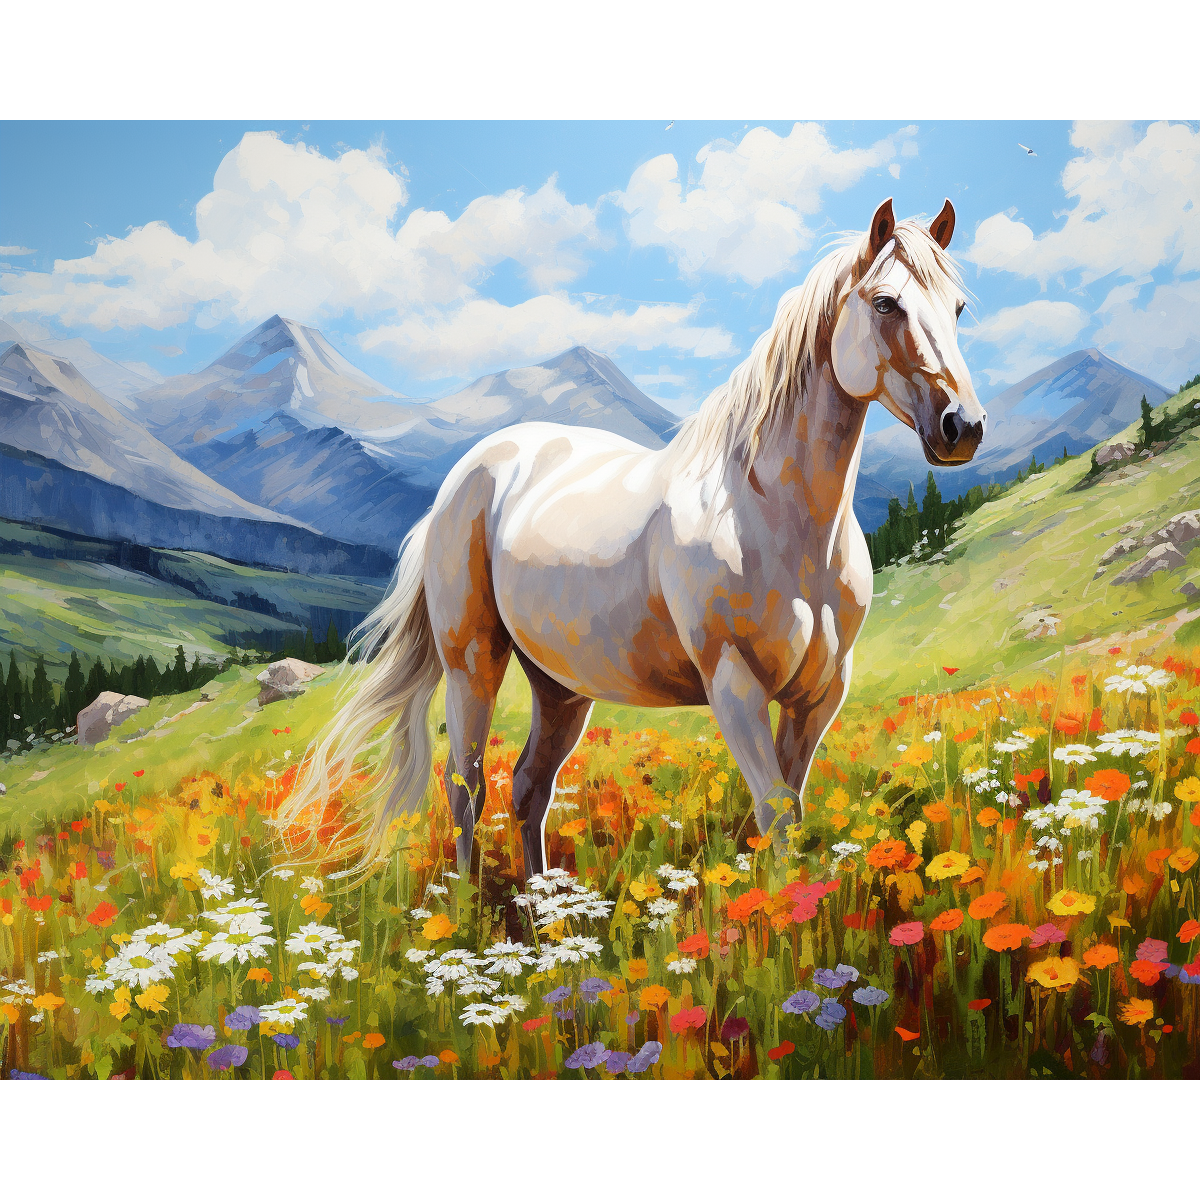 Il cavallo bianco di Meadow Grace